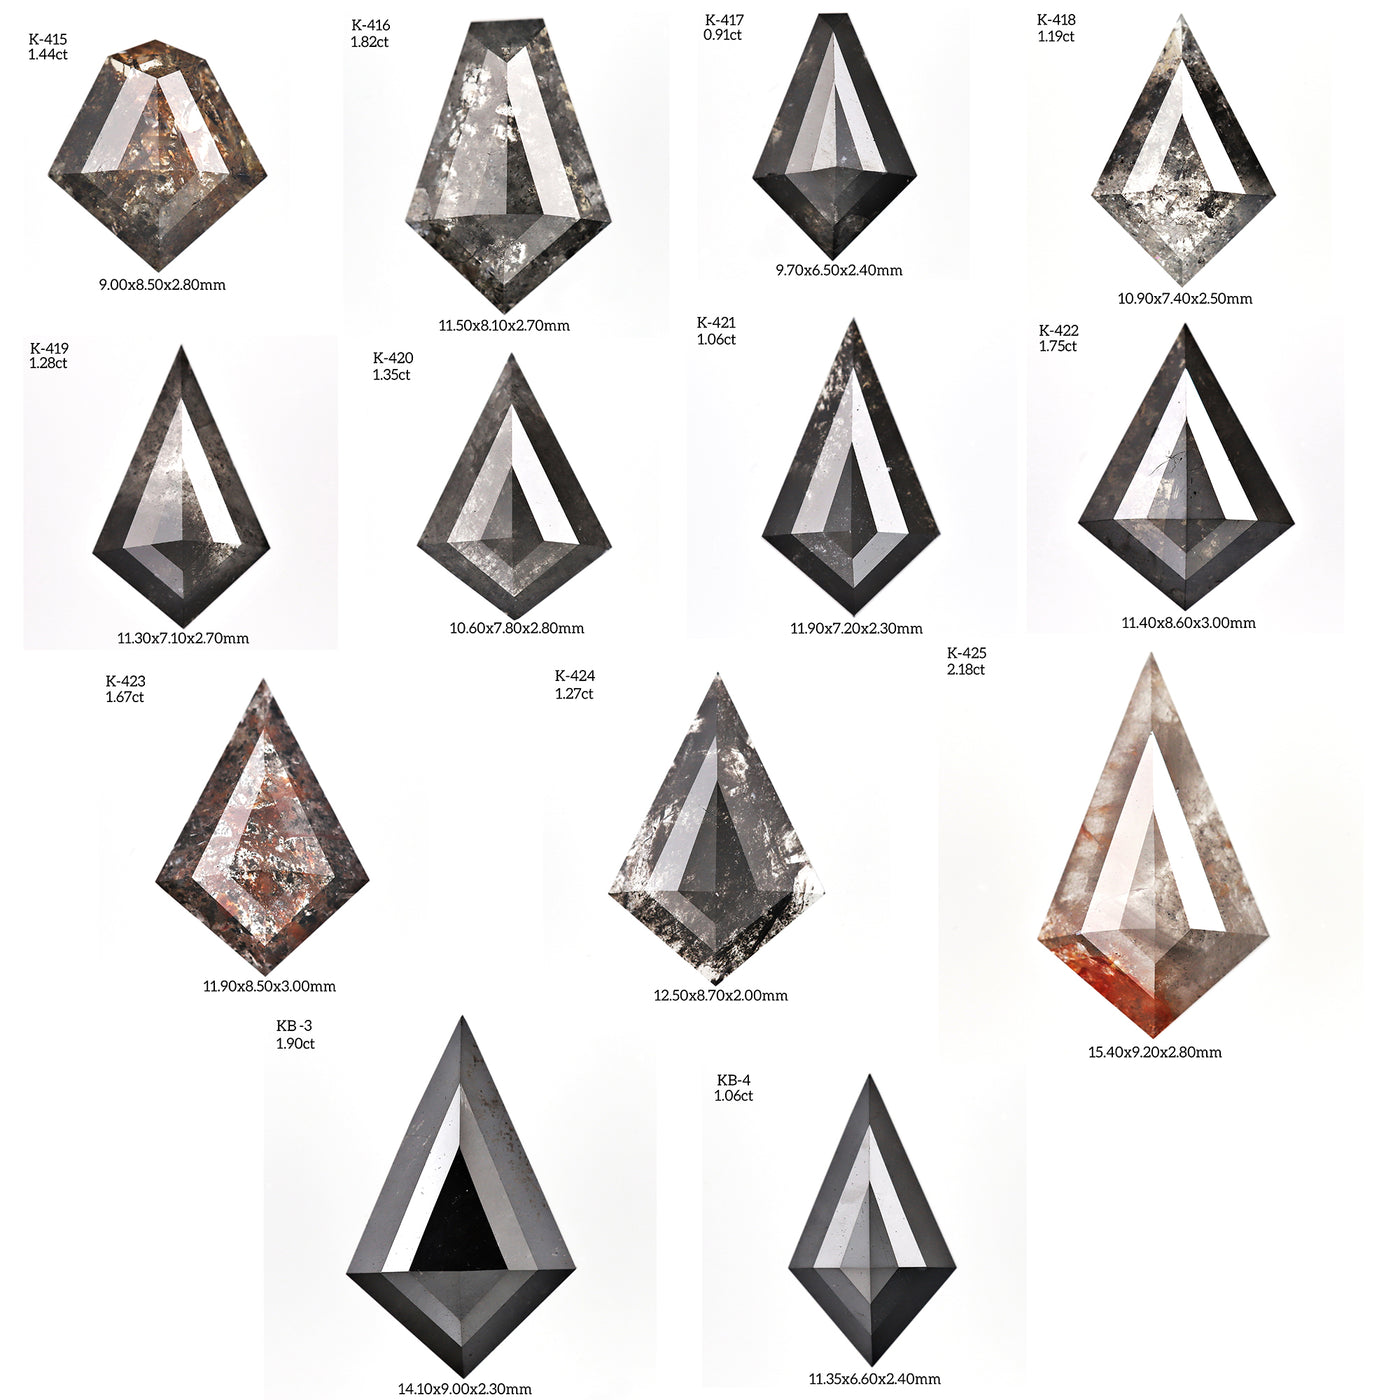 K421 - Salt and pepper kite diamond